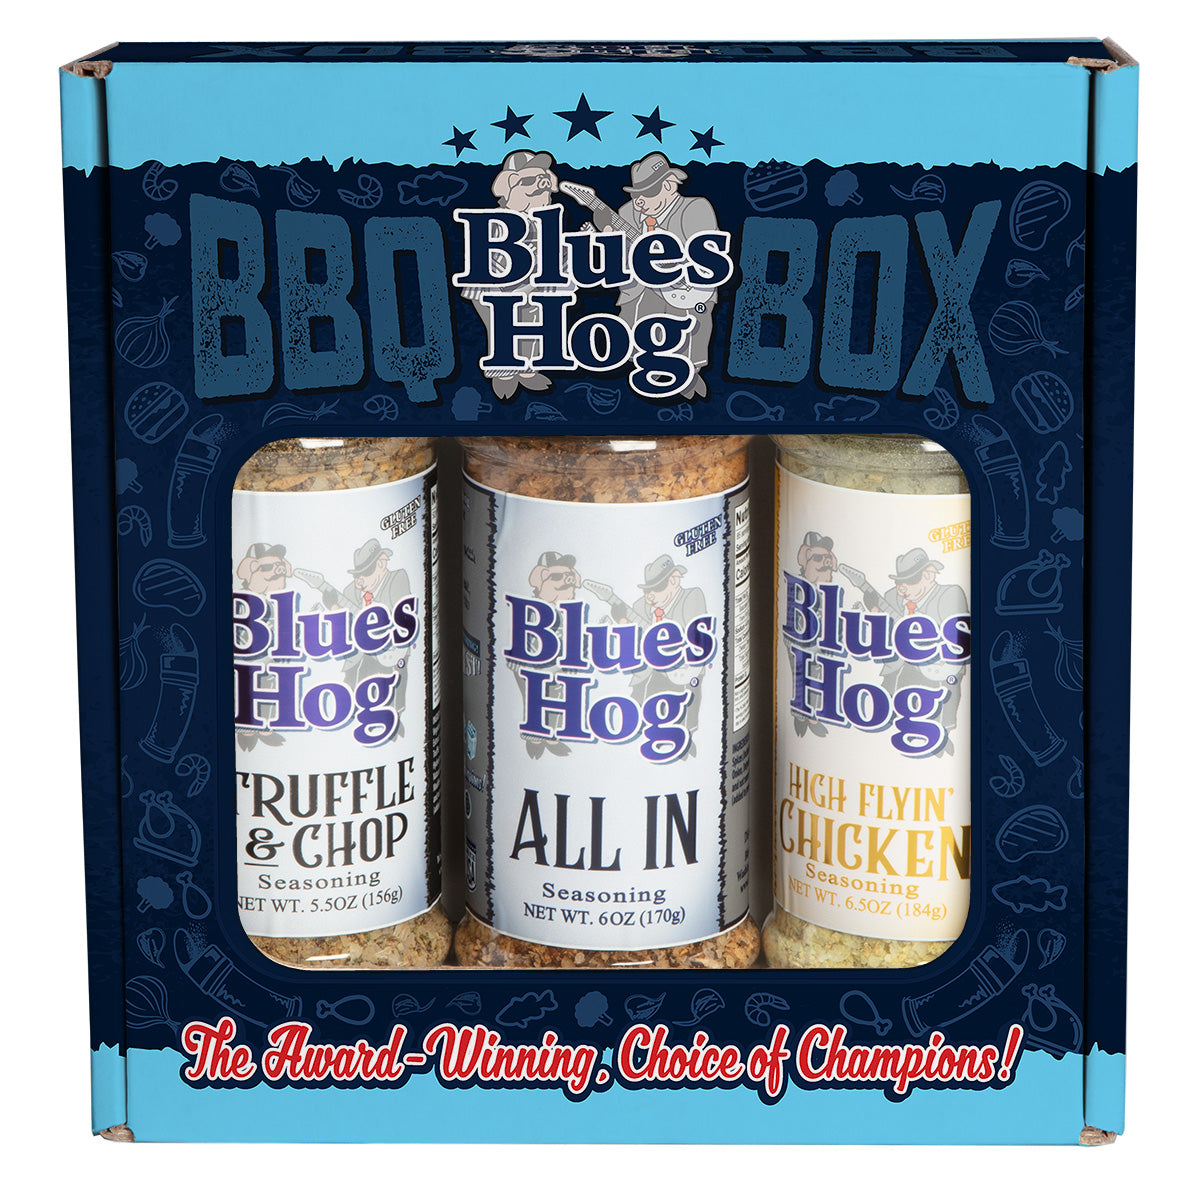 Seasonings BBQ Box - All In, High Flyin' Chicken, and Truffle & Chop - Blues Hog